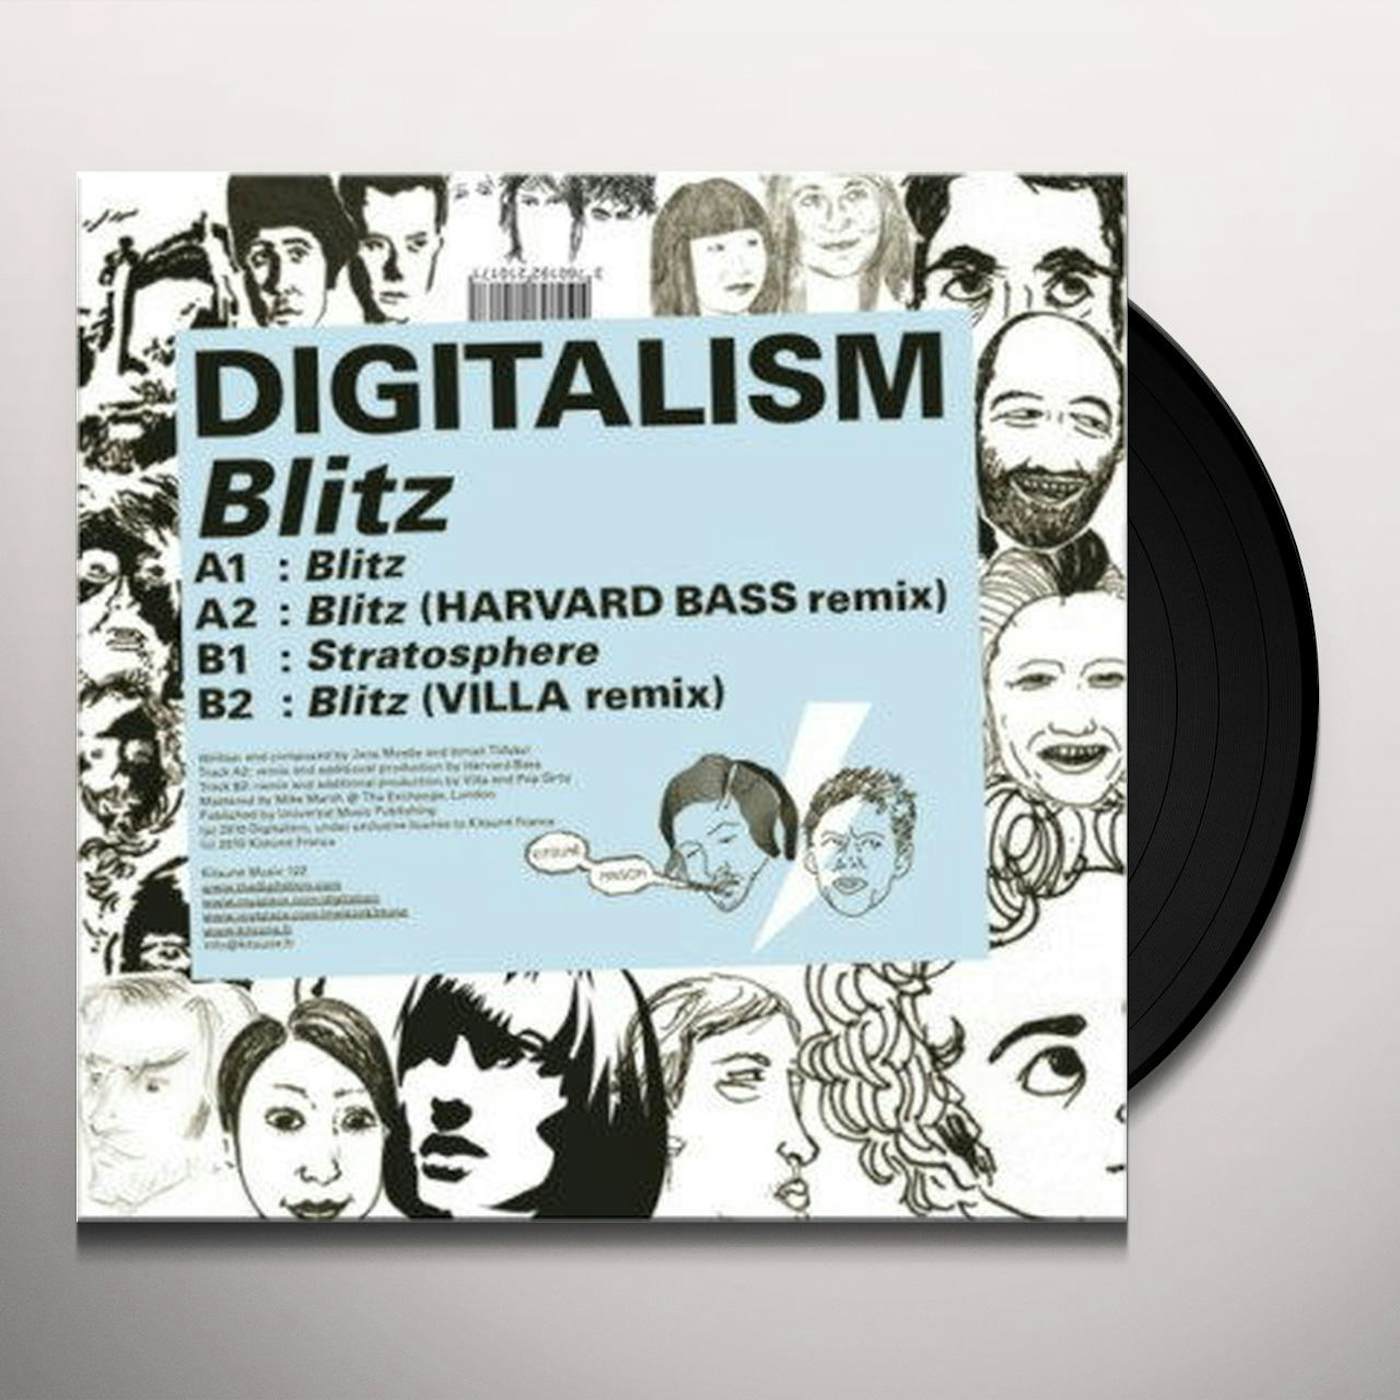 Digitalism Blitz Vinyl Record